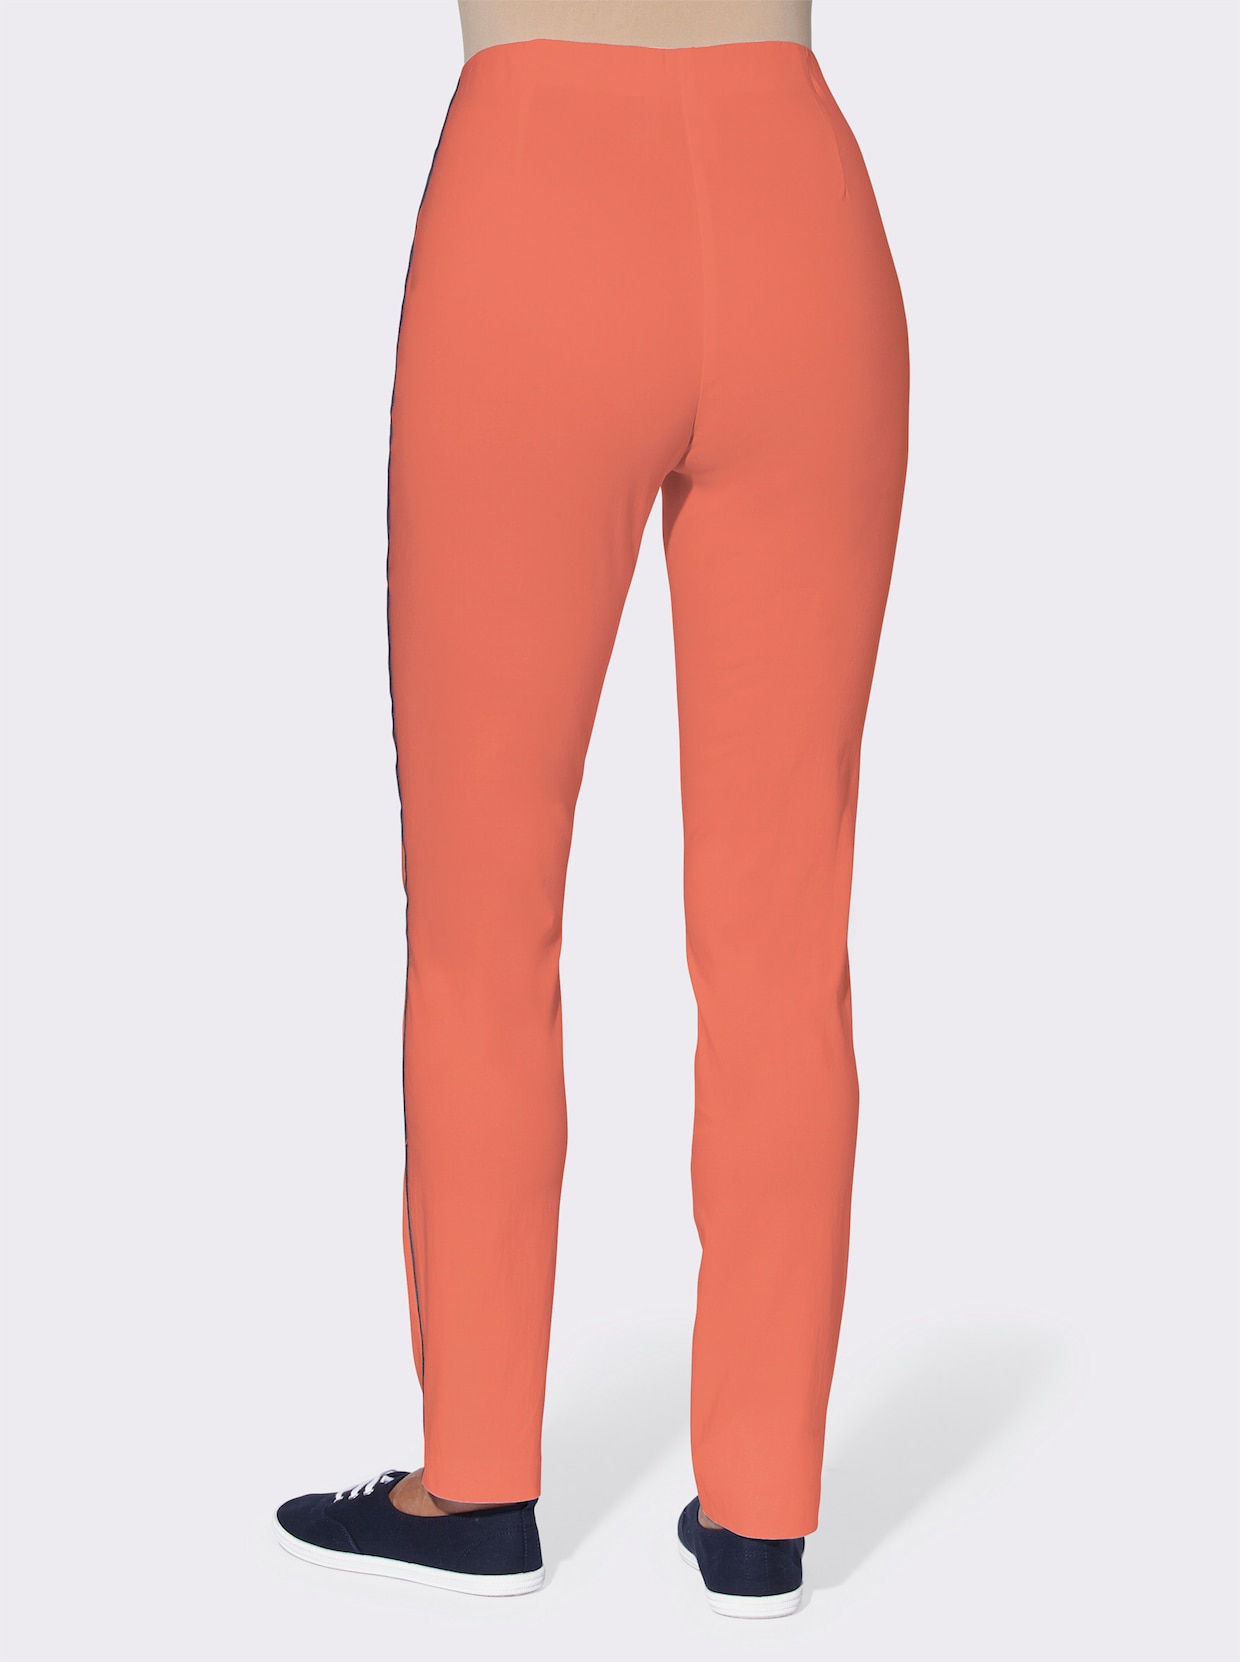 Bengalínové kalhoty - mandarinková